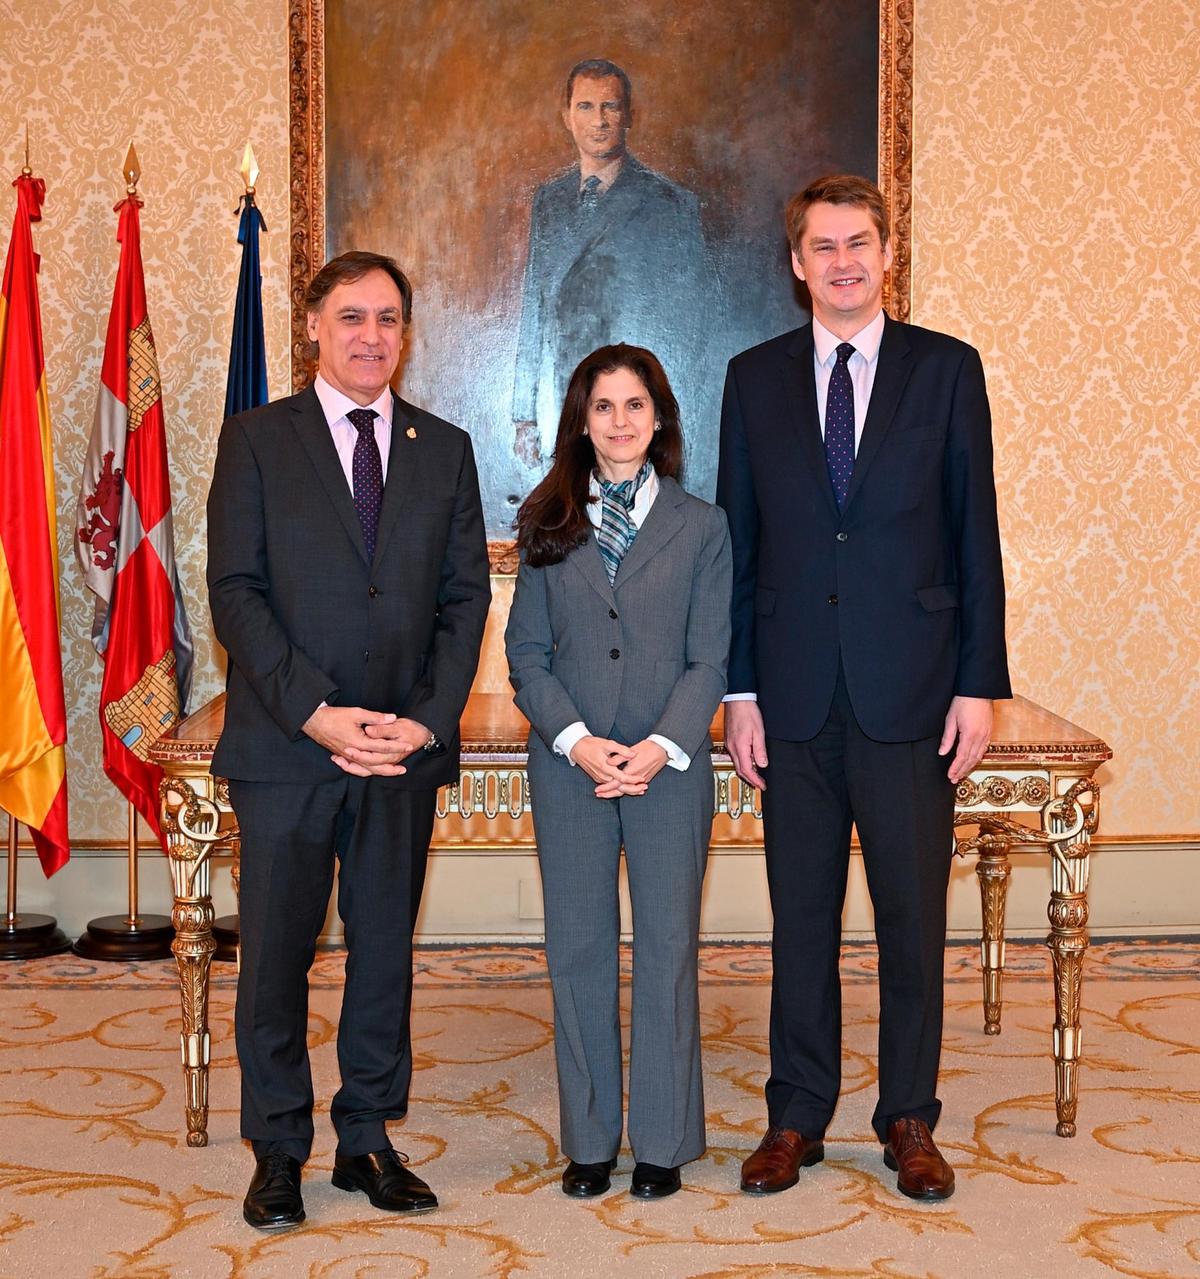 Hught Elliot y su mujer, junto al alcalde de Salamanca, Carlos García Carbayo, en su reciente visita a Salamanca.